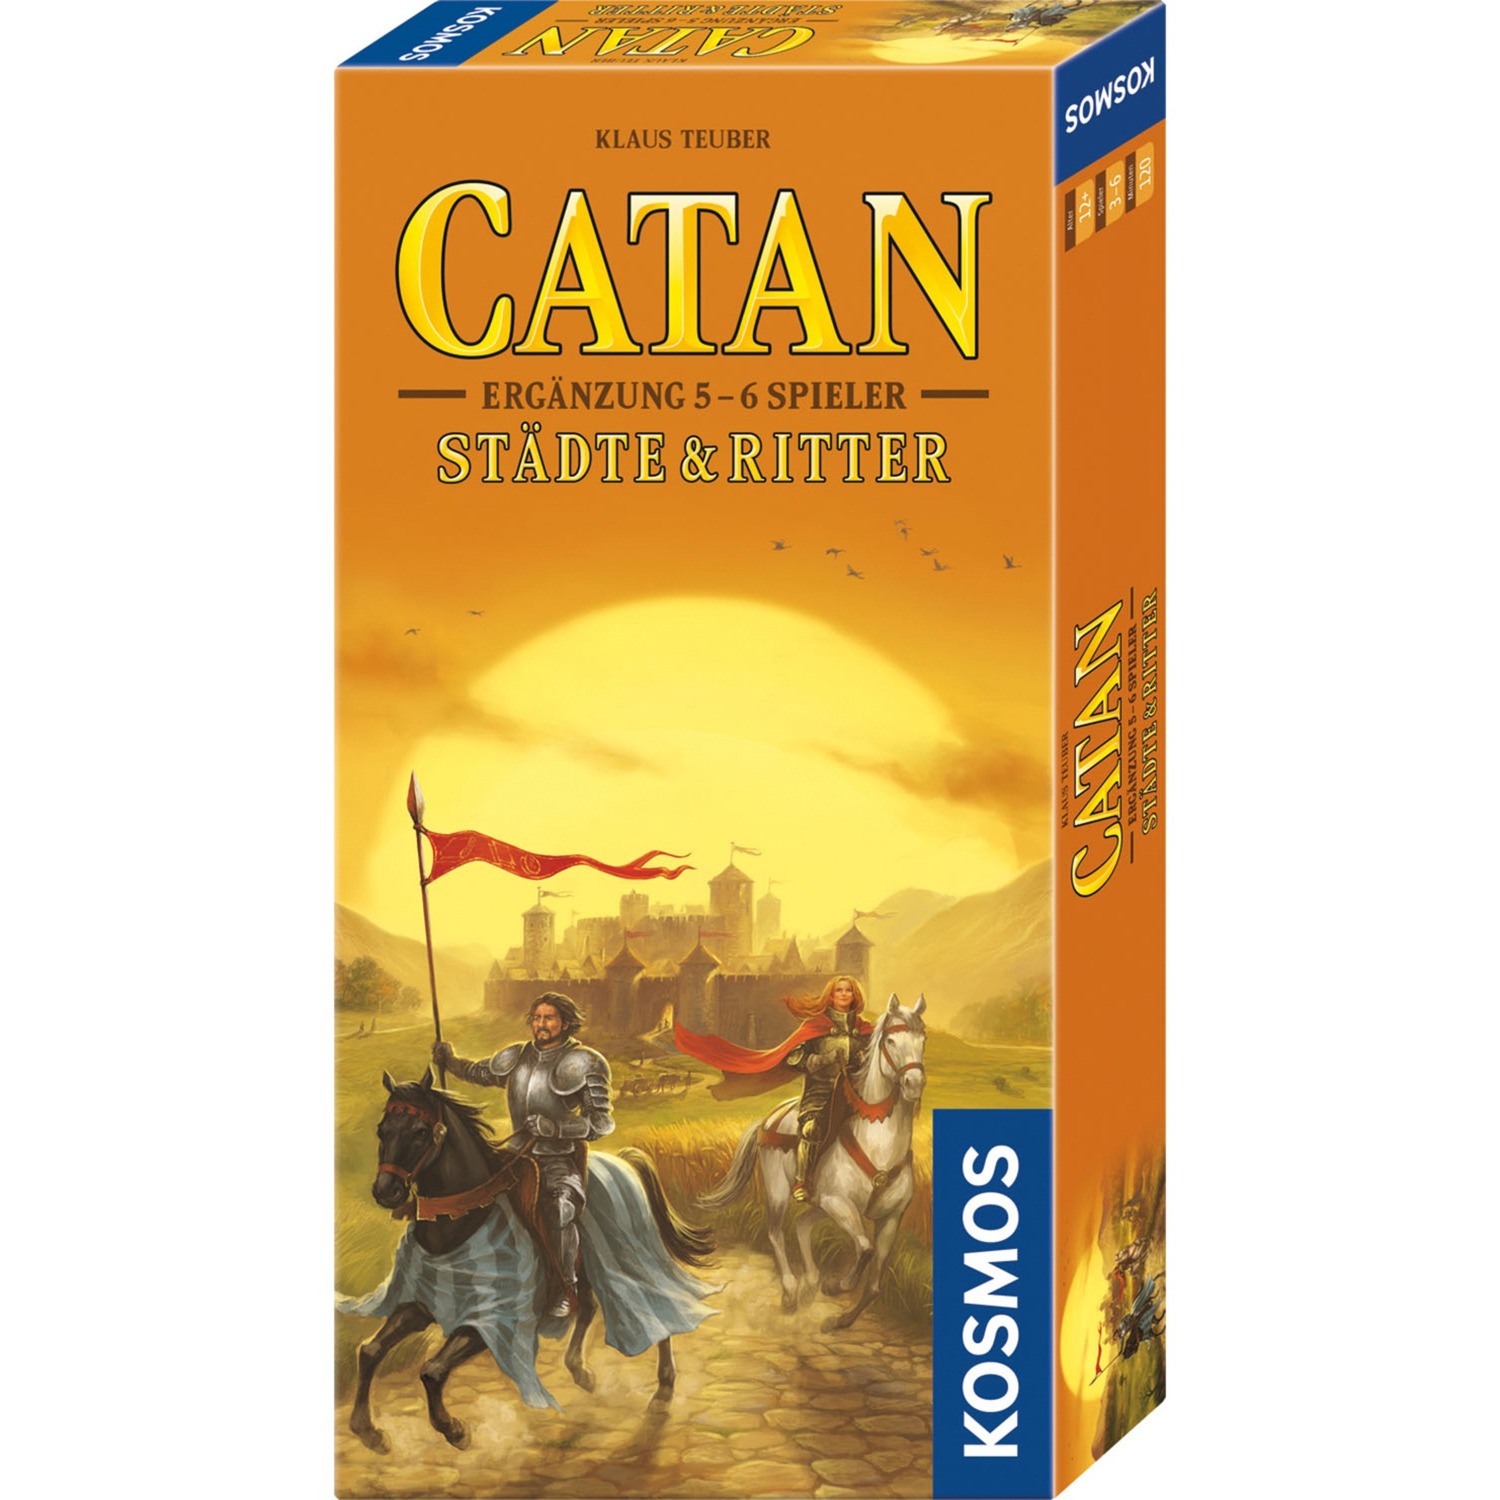 CATAN - Städte & Ritter Ergänzung 5-6 Spieler, Brettspiel von Kosmos